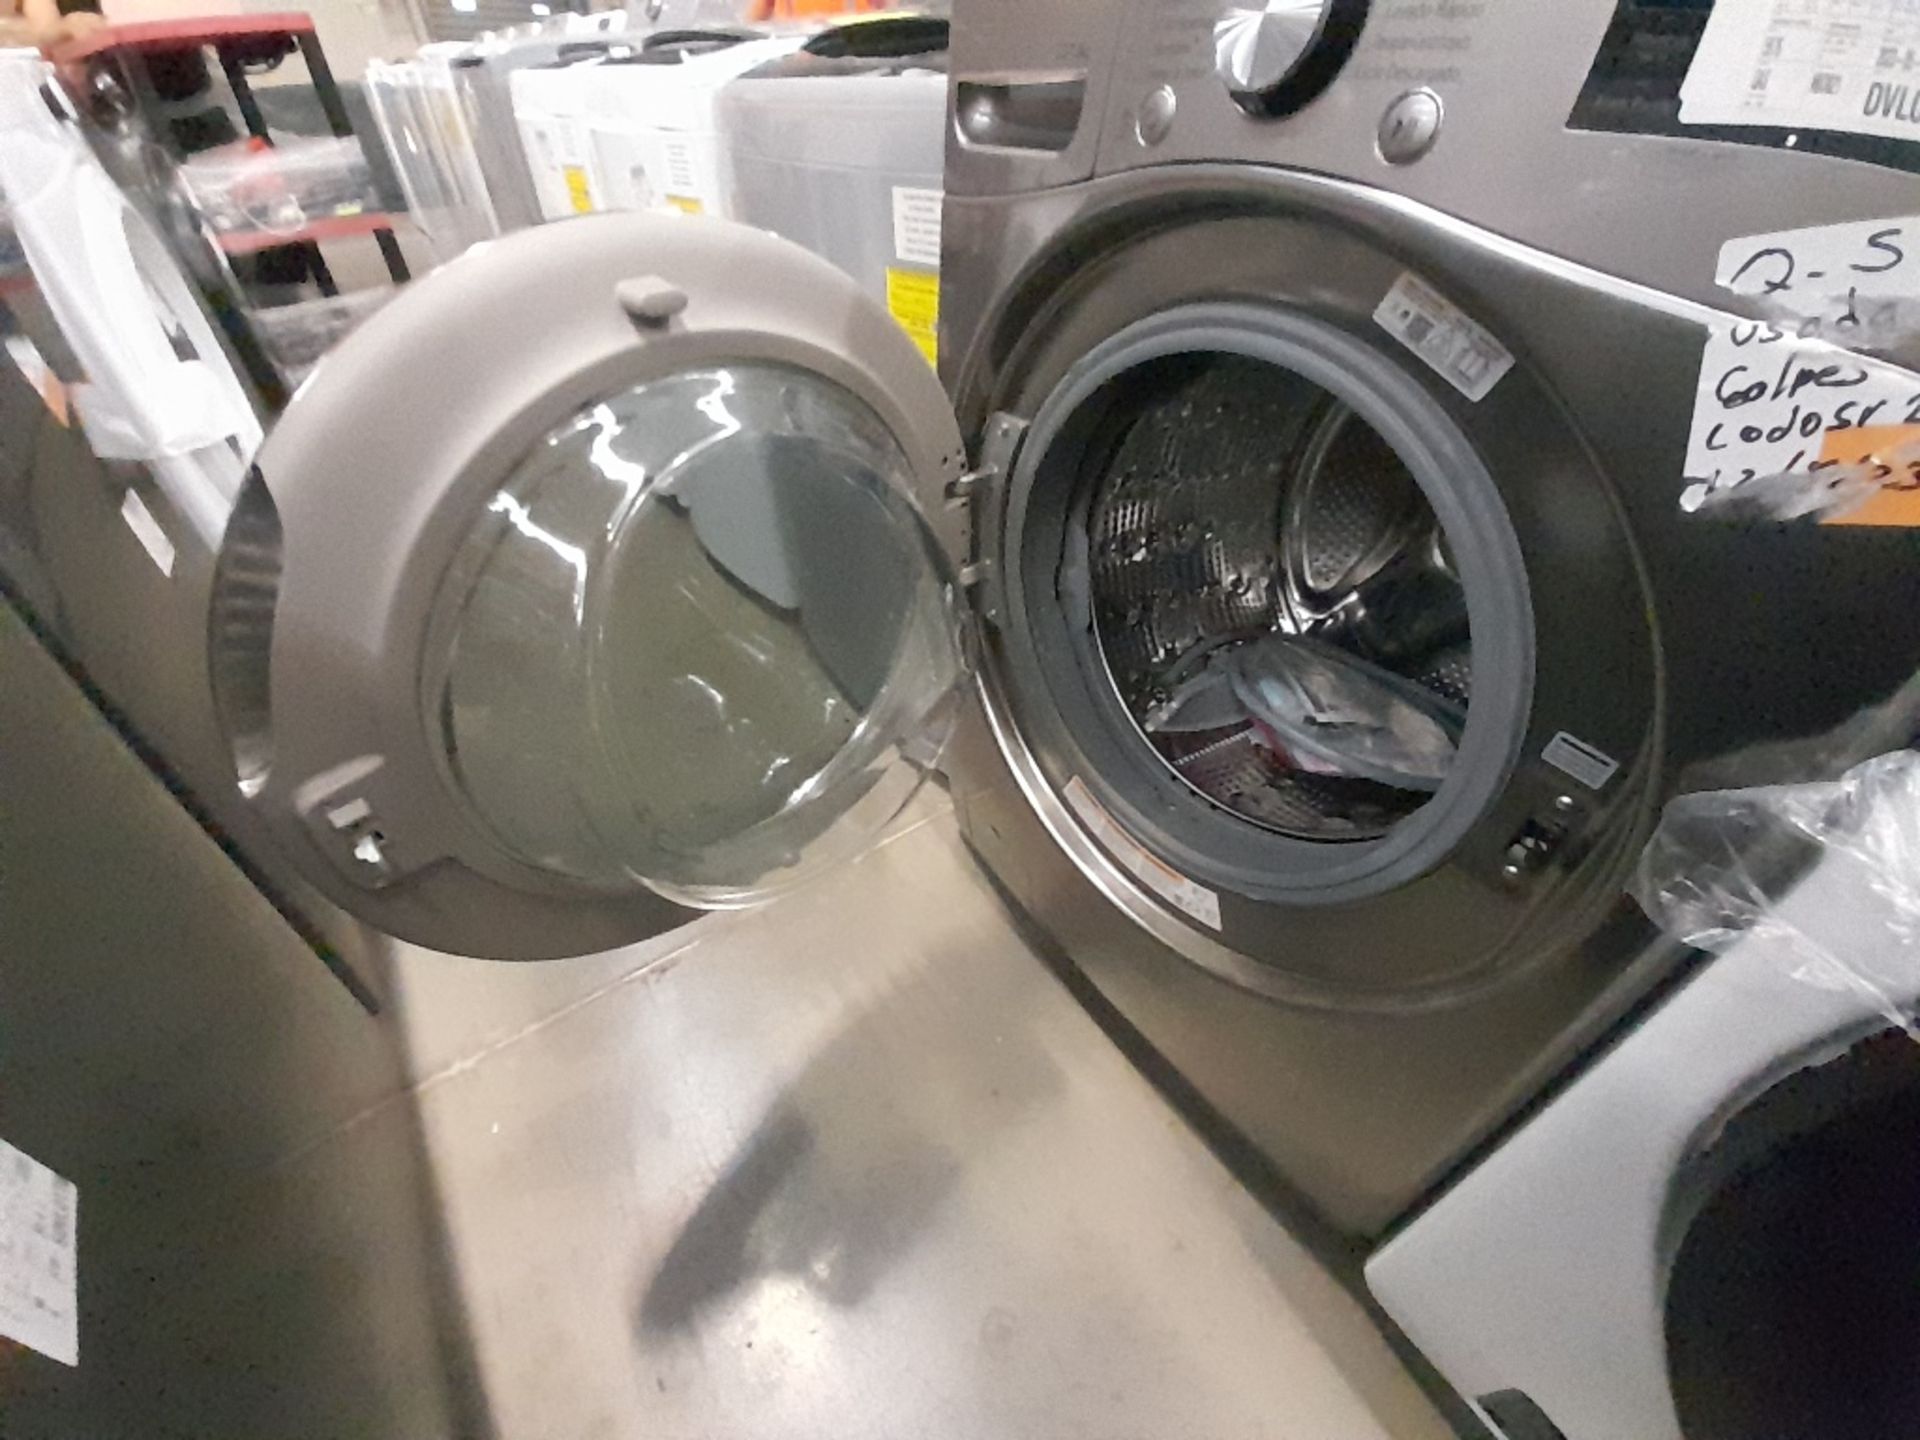 Lote de 1 lavadora y 1 Lavasecadora contiene: 1 lavadora de 18 KG, Marca LG, Modelo WT18DV6, Serie - Image 6 of 8